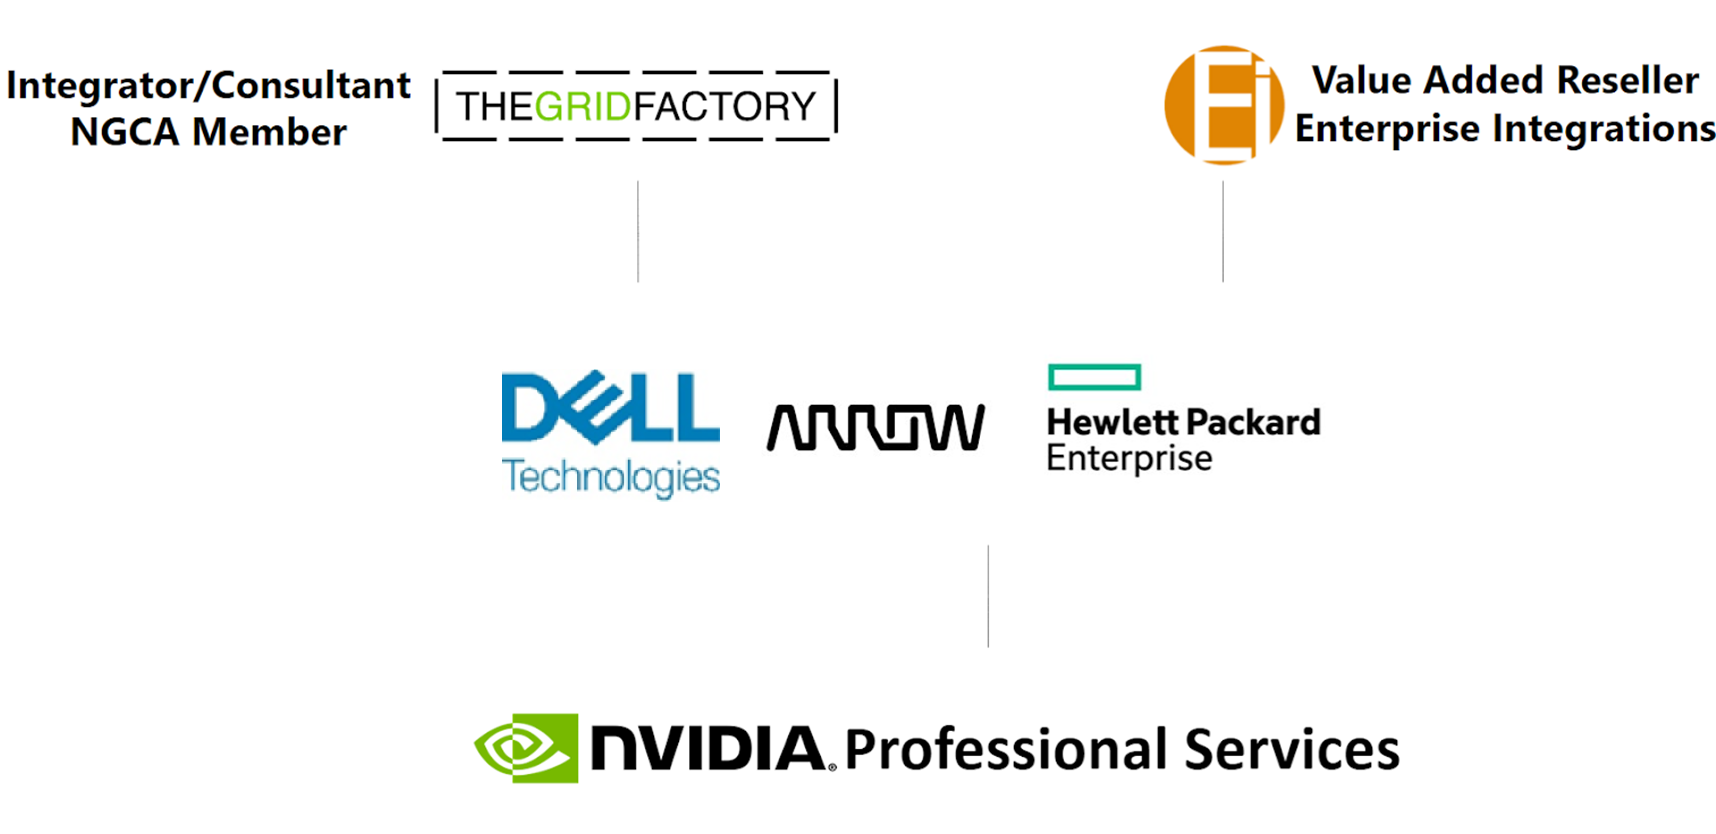 Biểu trưng của đối tác phân phối bán hàng: The Grid Factory, Enterprise Integrations, Dell, Arrow và Hewlett Packard Enterprise